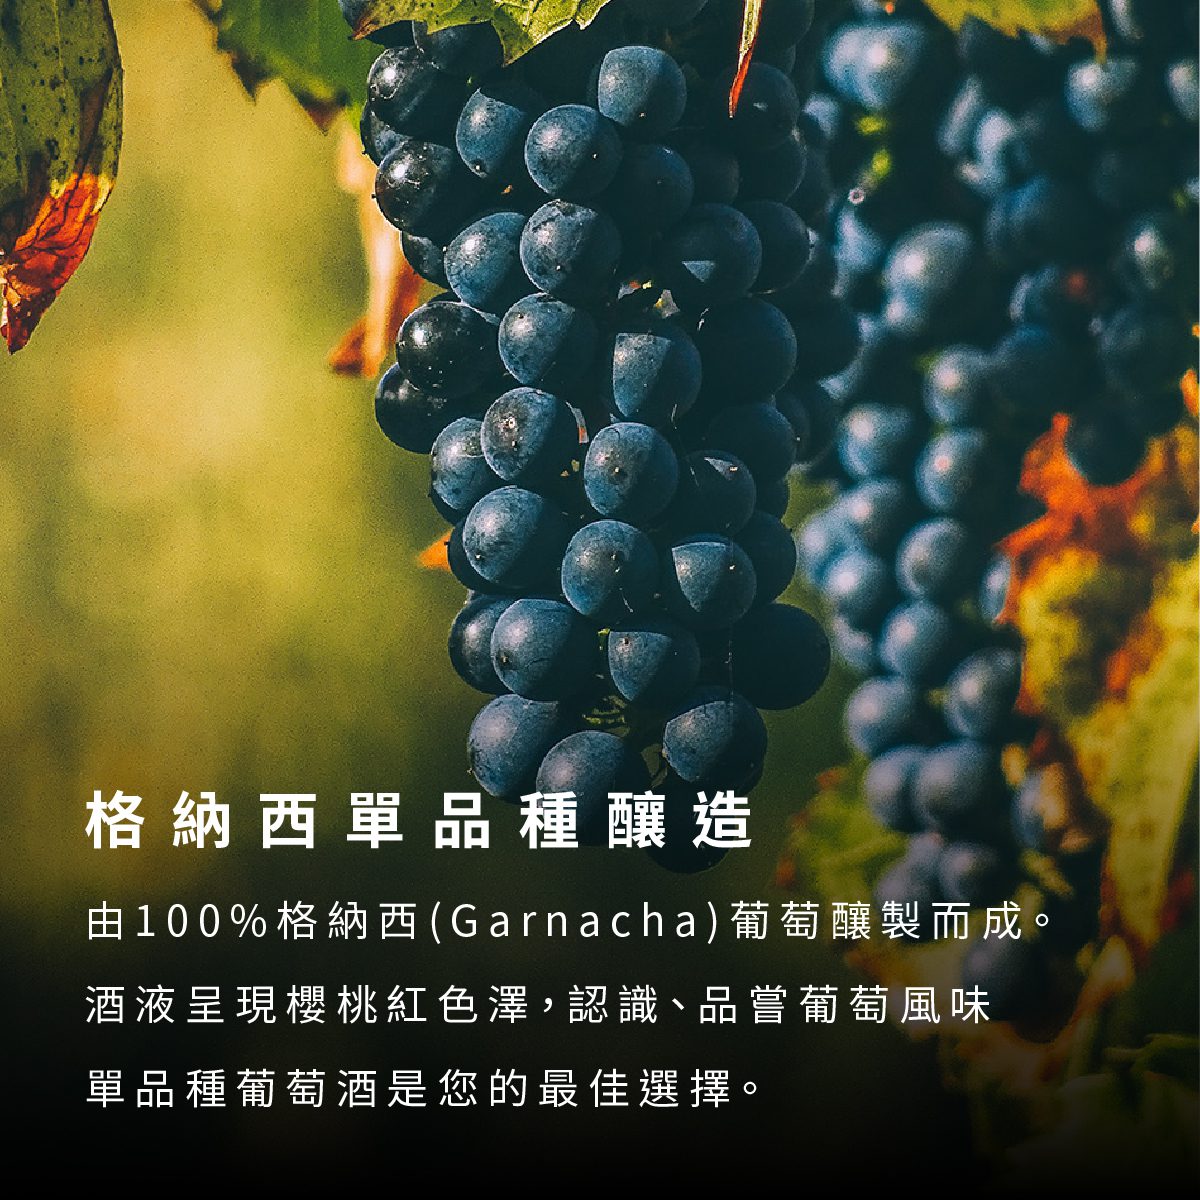 由100%格納西(Garnacha)葡萄釀製而成。酒液呈現櫻桃紅色澤，認識、品嘗葡萄風味，單品種葡萄酒是您的最佳選擇。